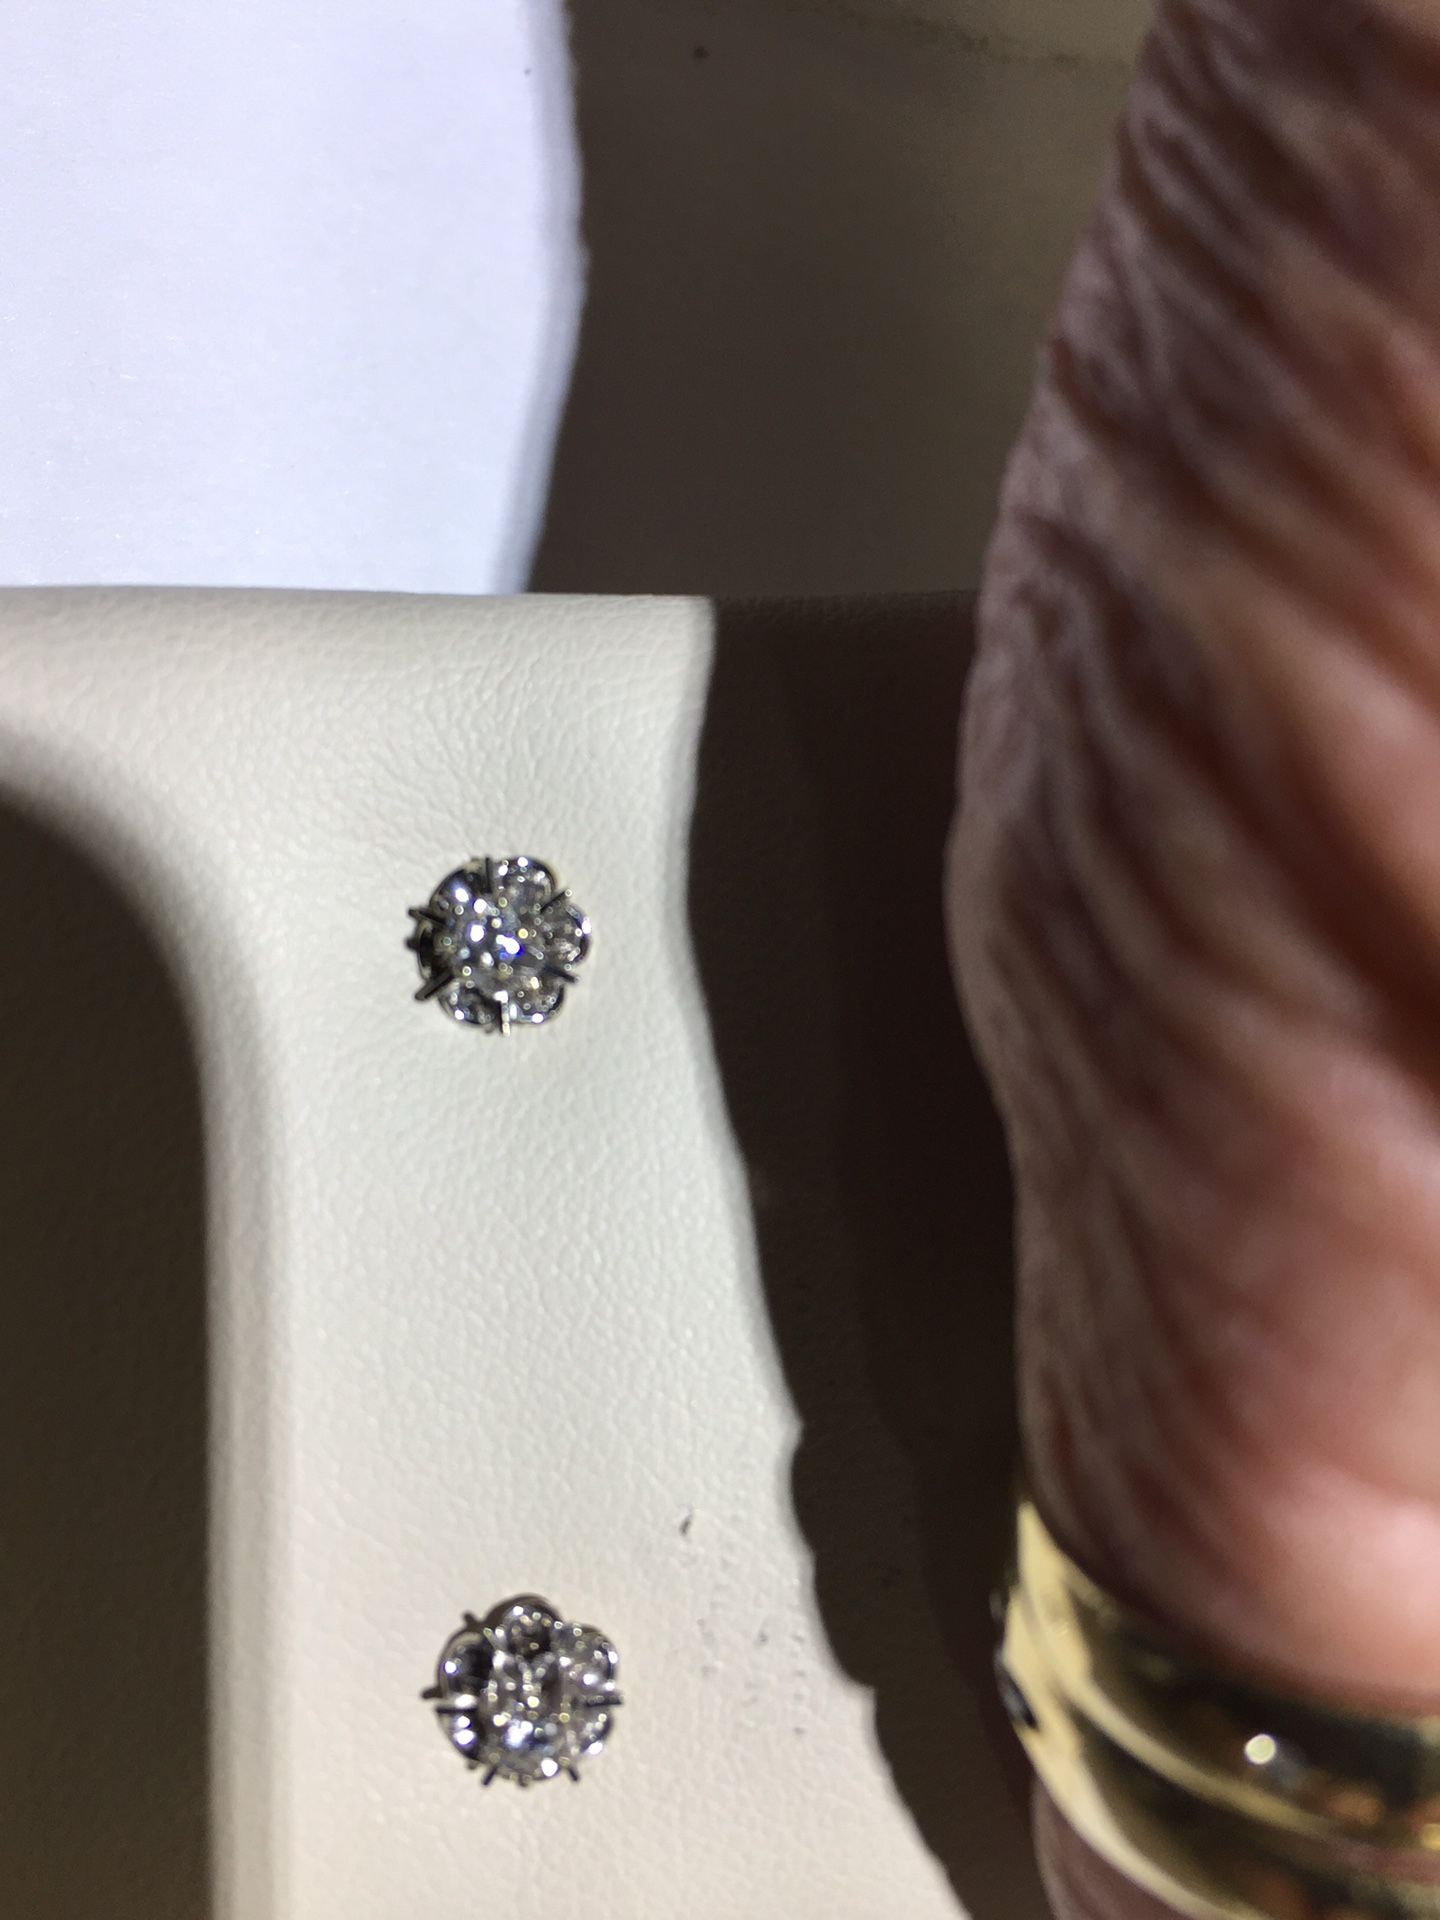 Pair of diamond stud earrings